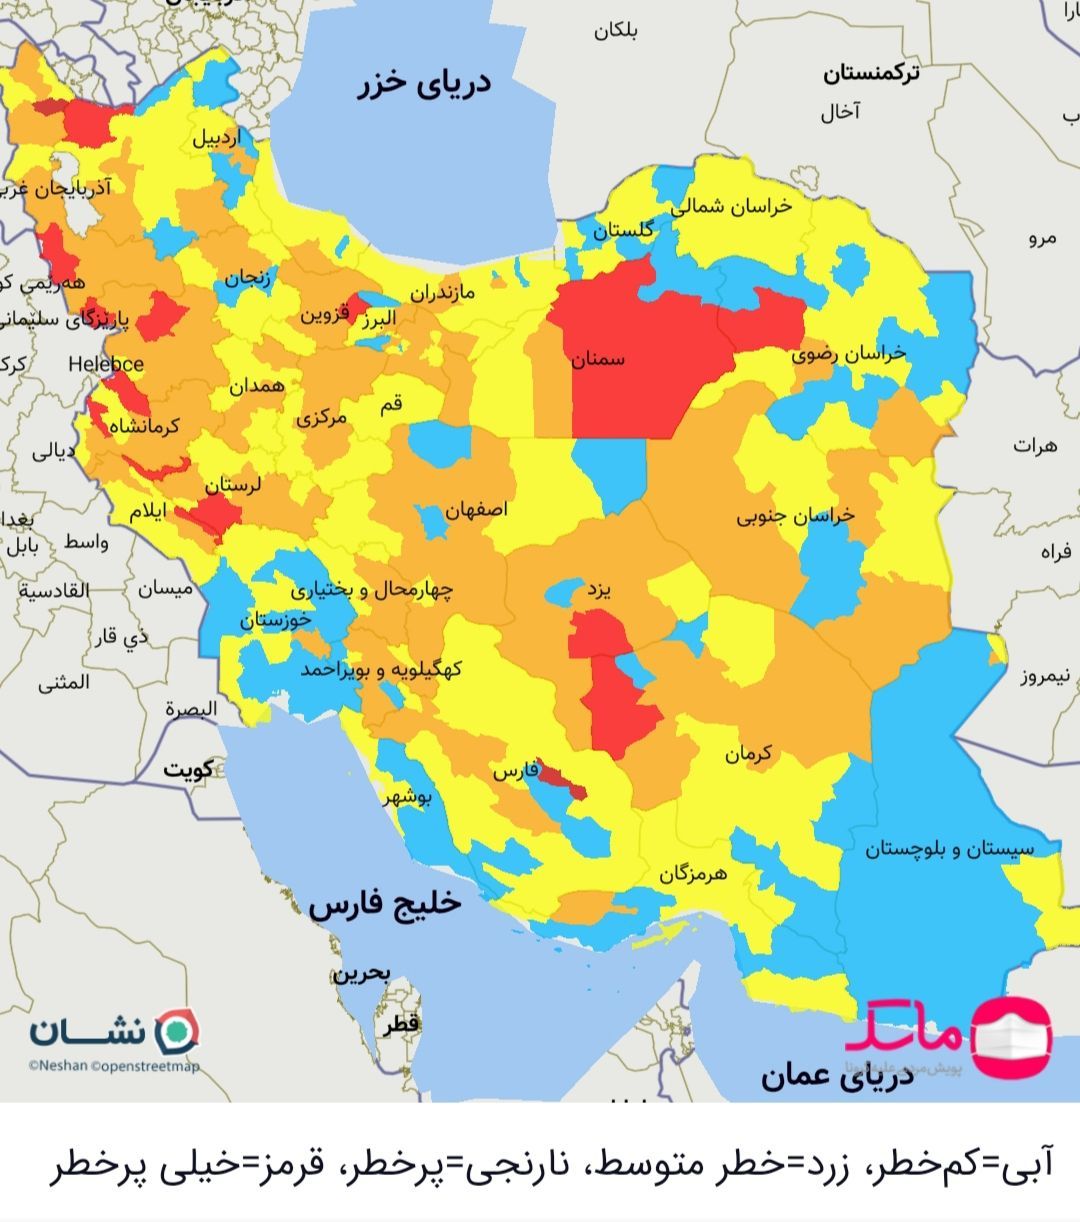 مازندران در وضعیت زرد کرونا، شهرهای قرمز مشخص شدند+نقشه